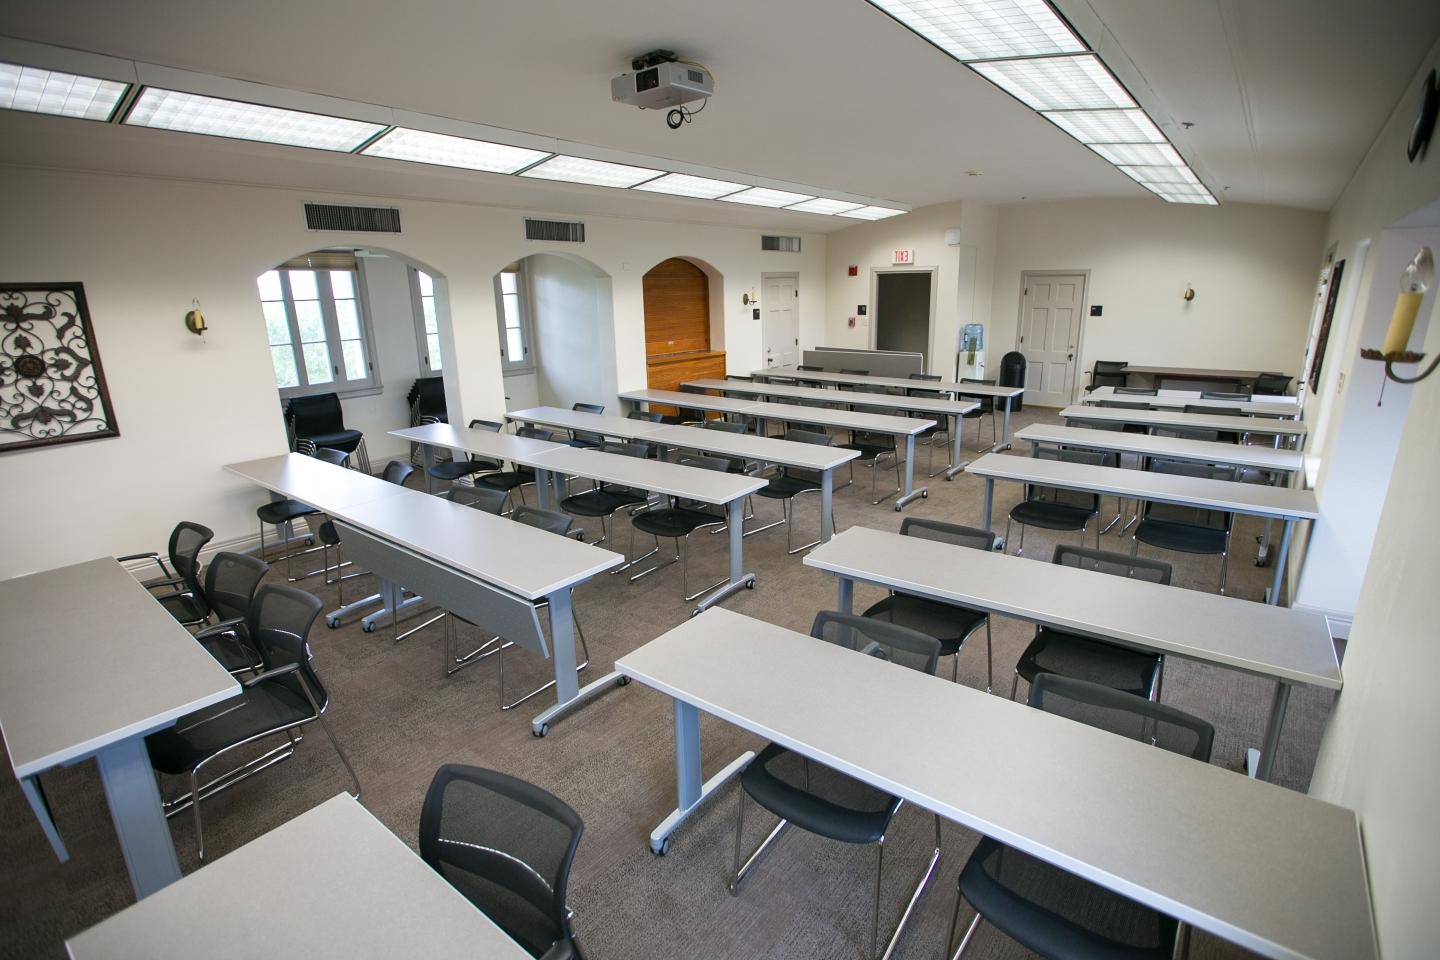 霍尔特中心三楼的教室里有七排桌子